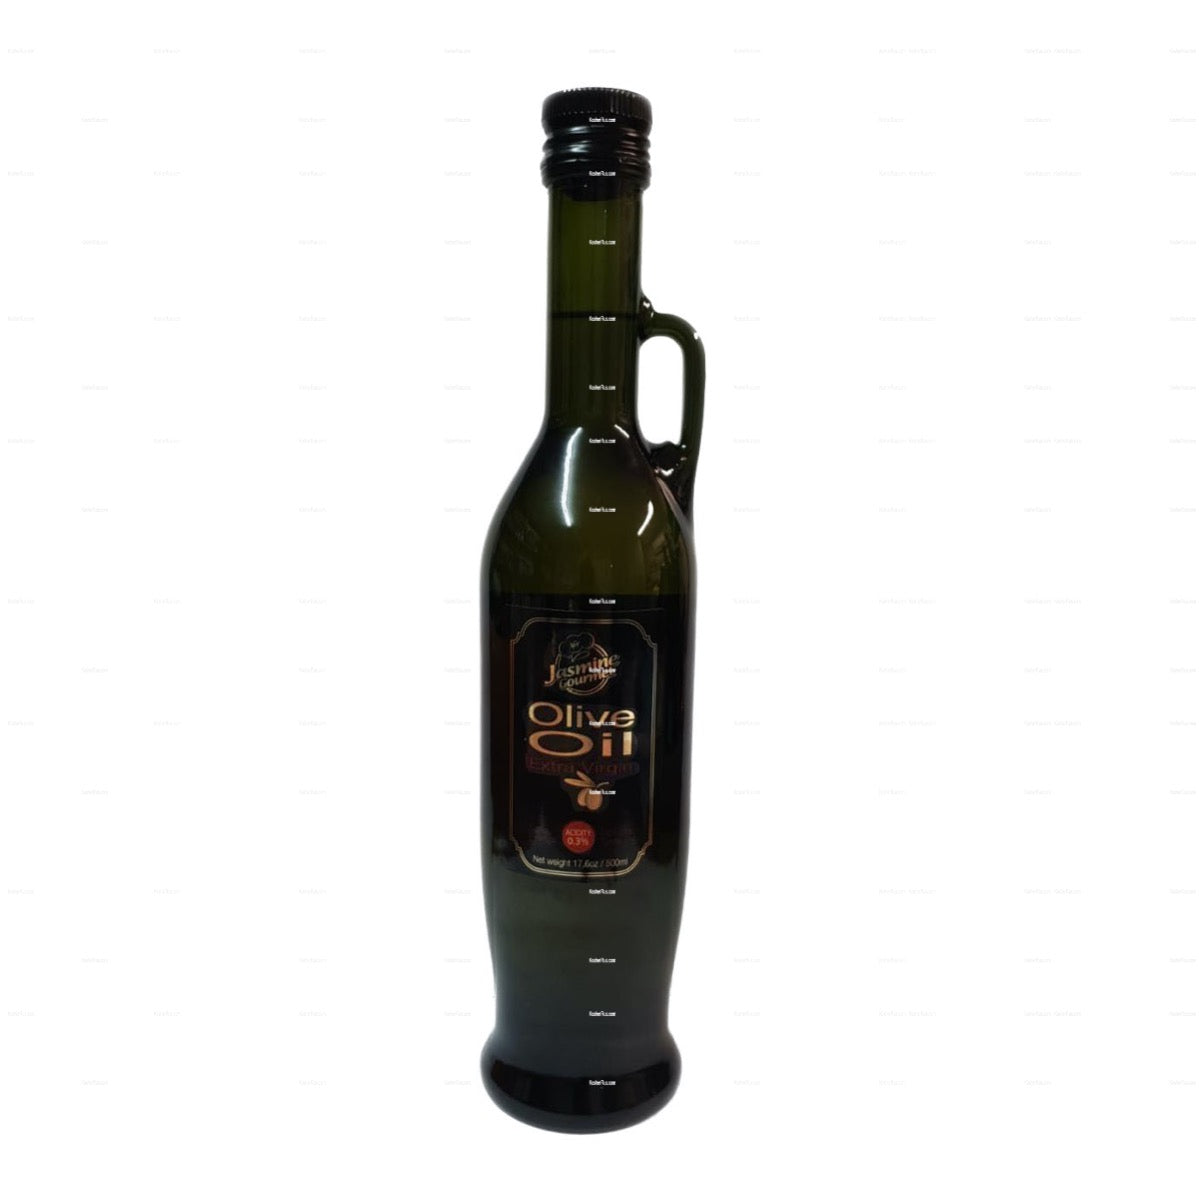 Jasmine Gourmet Olive Oil (0.3% Acidity) 500ml